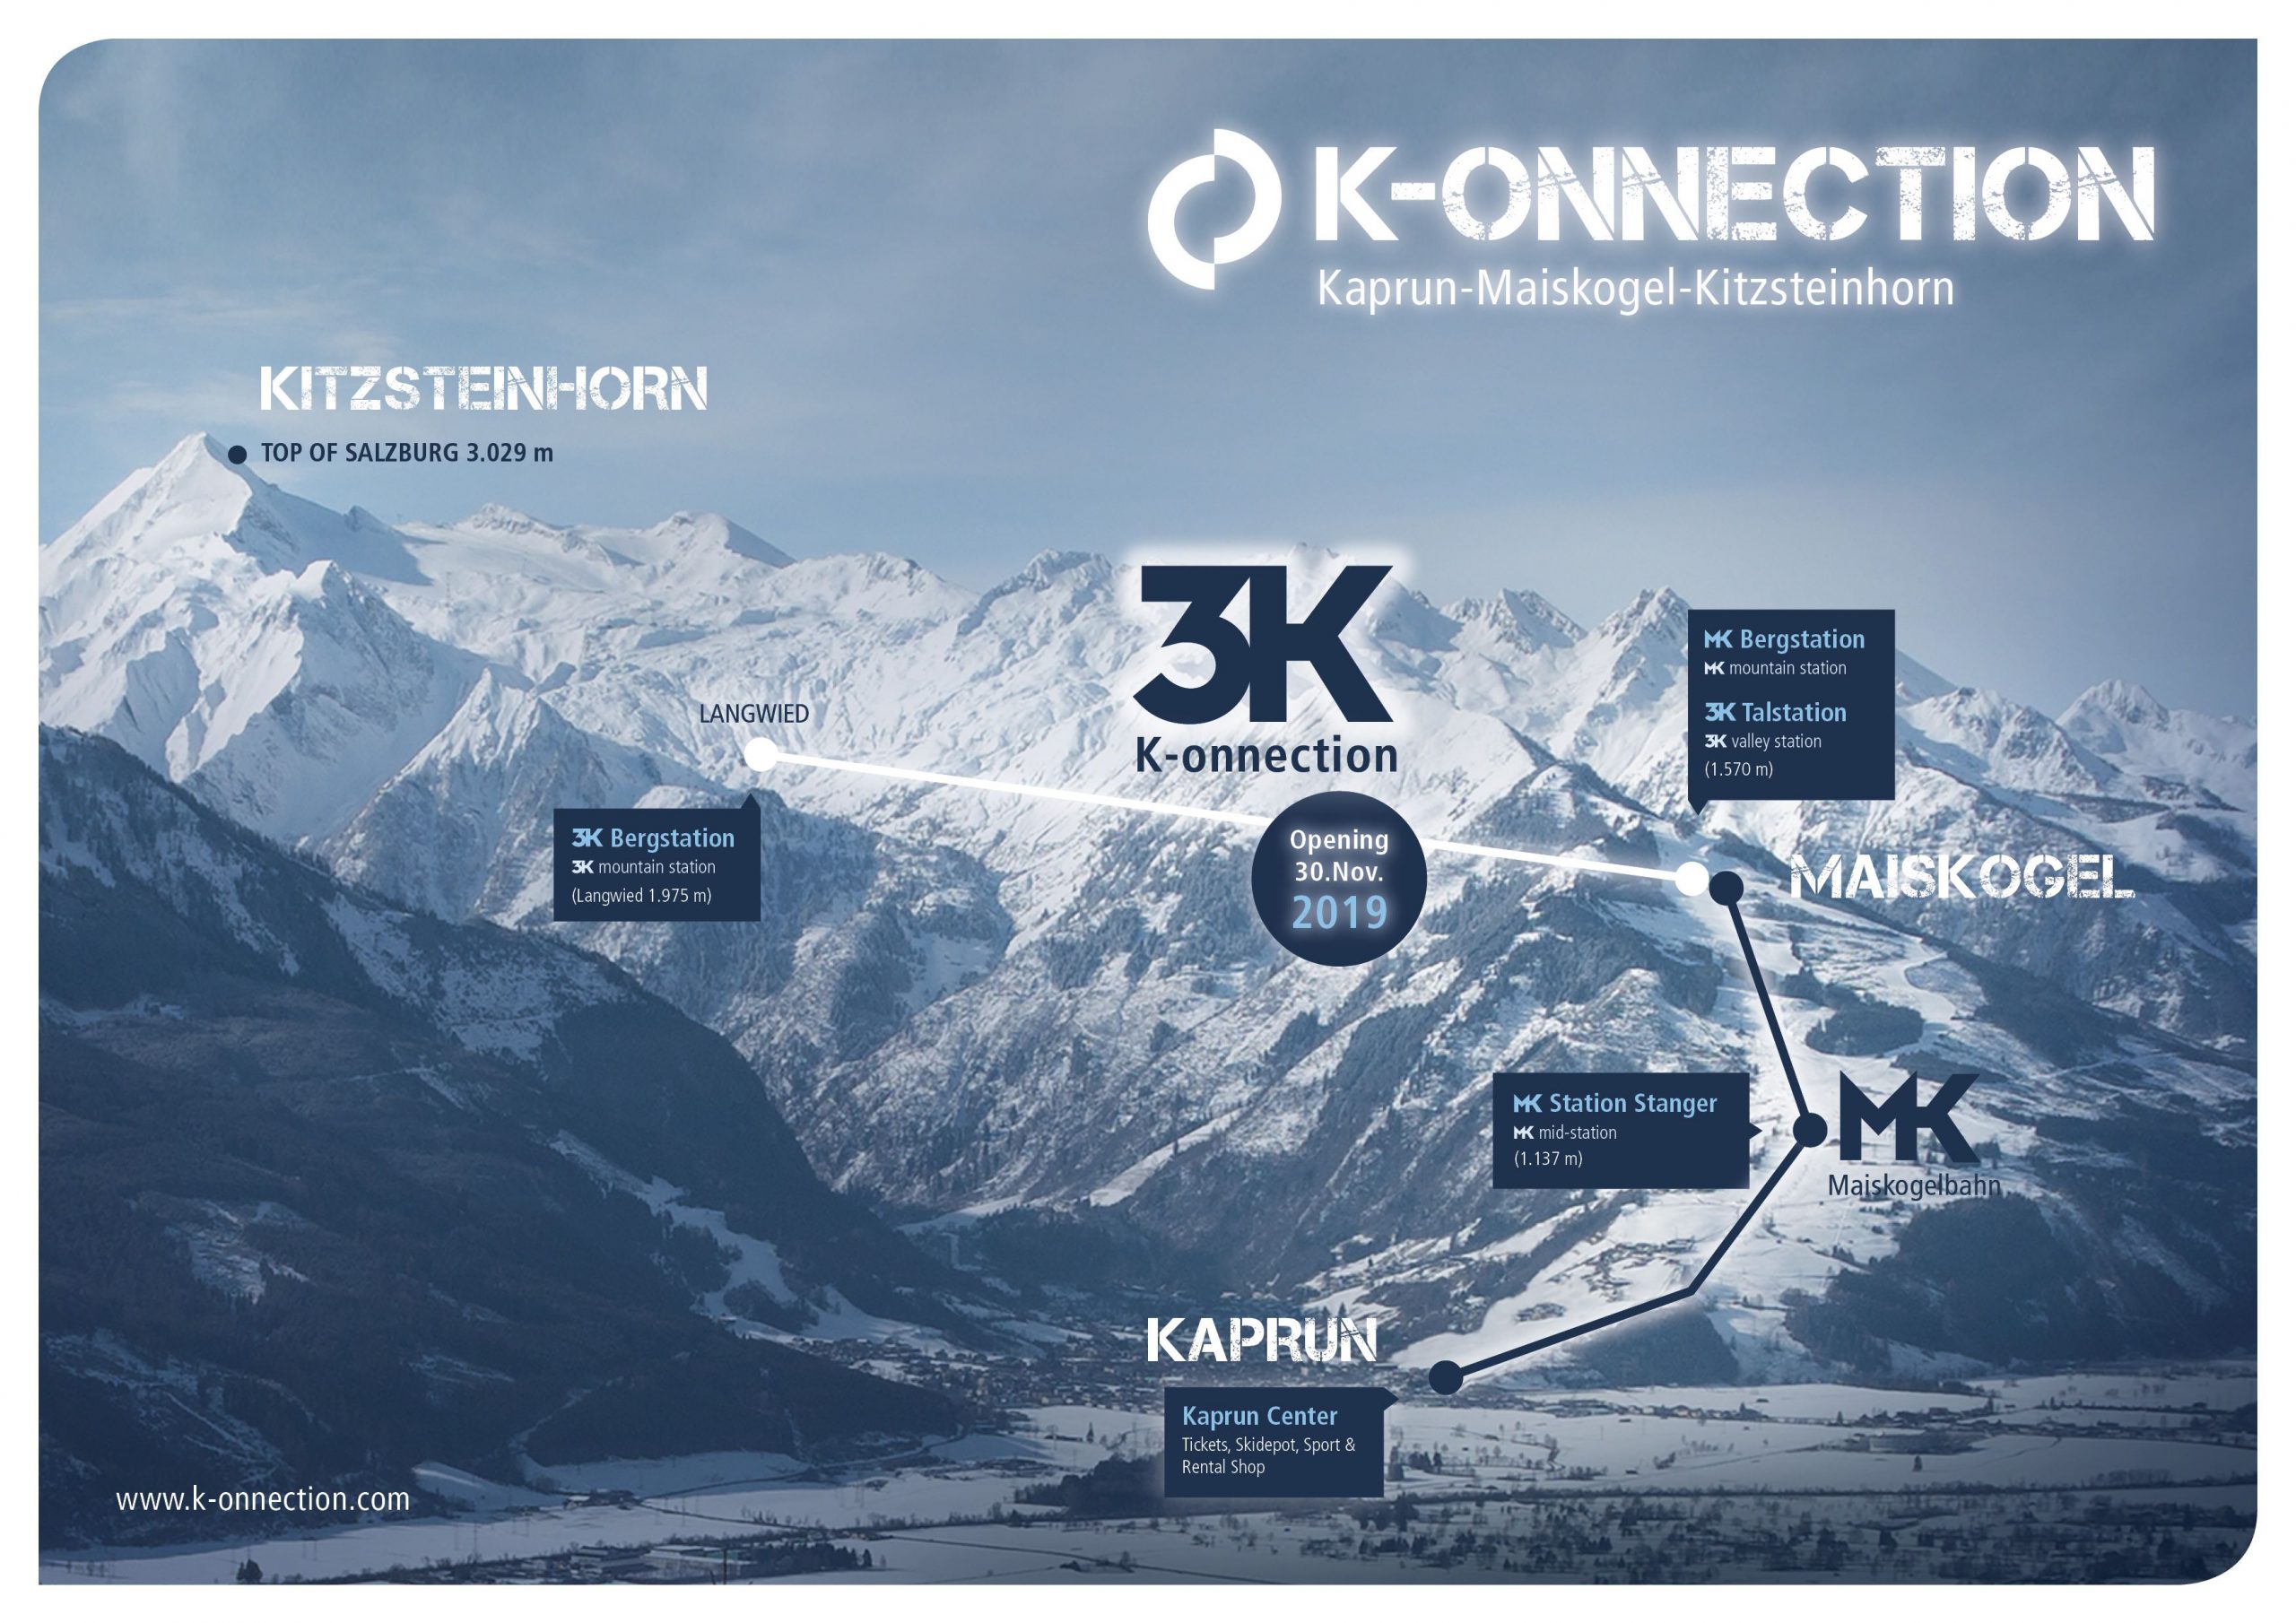 New 3k K-onnection lift in Kaprun